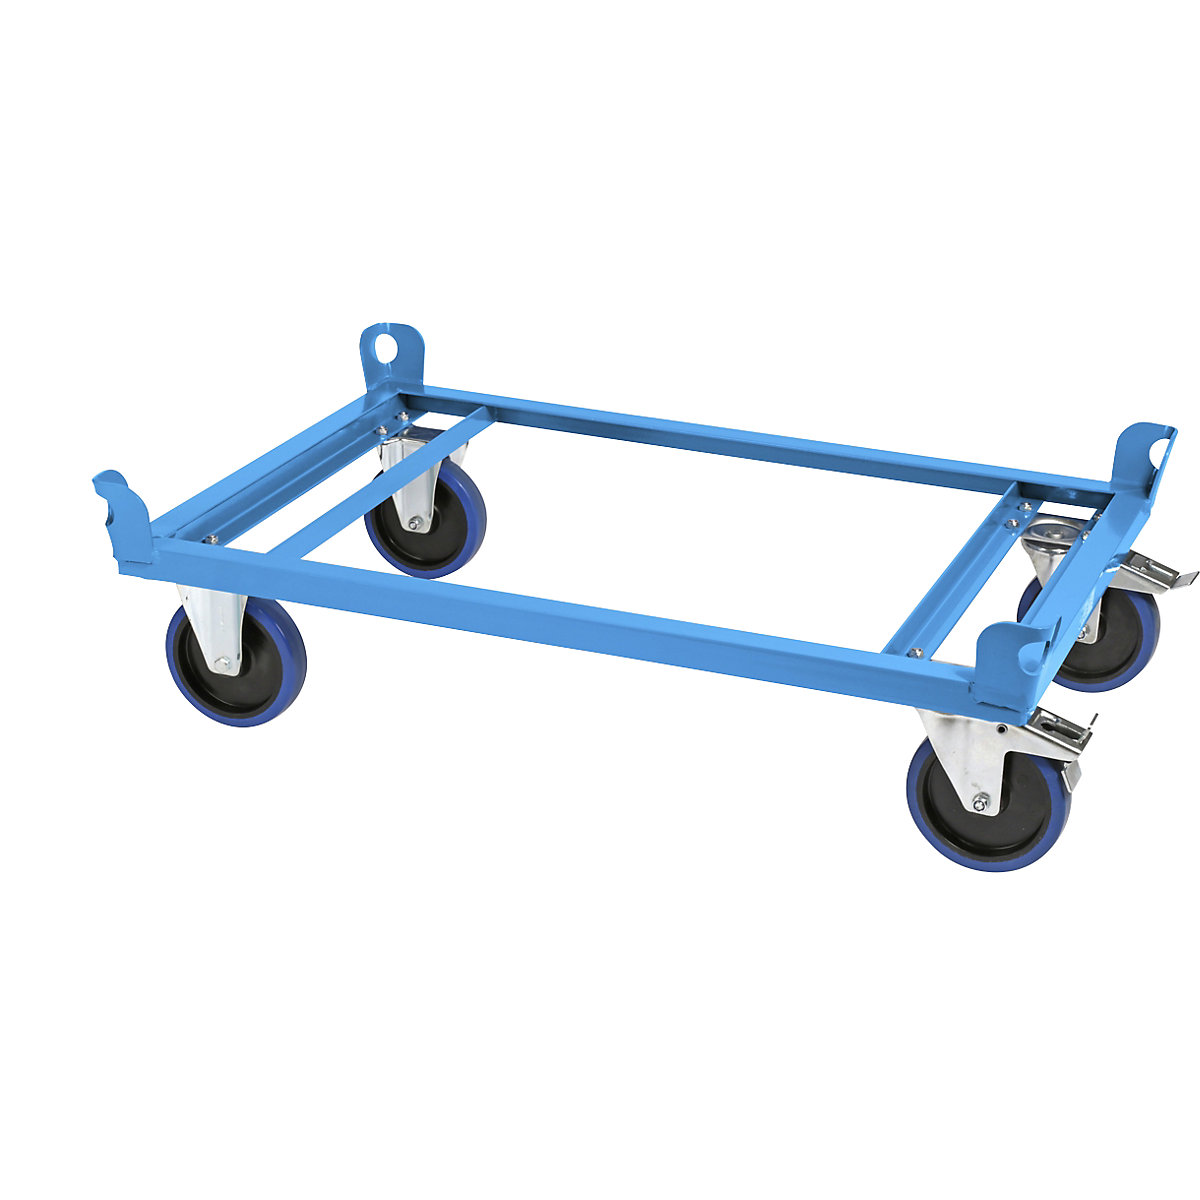 Onderwagen van staal – eurokraft pro, voor pallets van 1000 x 800 mm, laadvermogen 1000 kg, laadhoogte 280 mm, blauw, vanaf 10 stuks-6